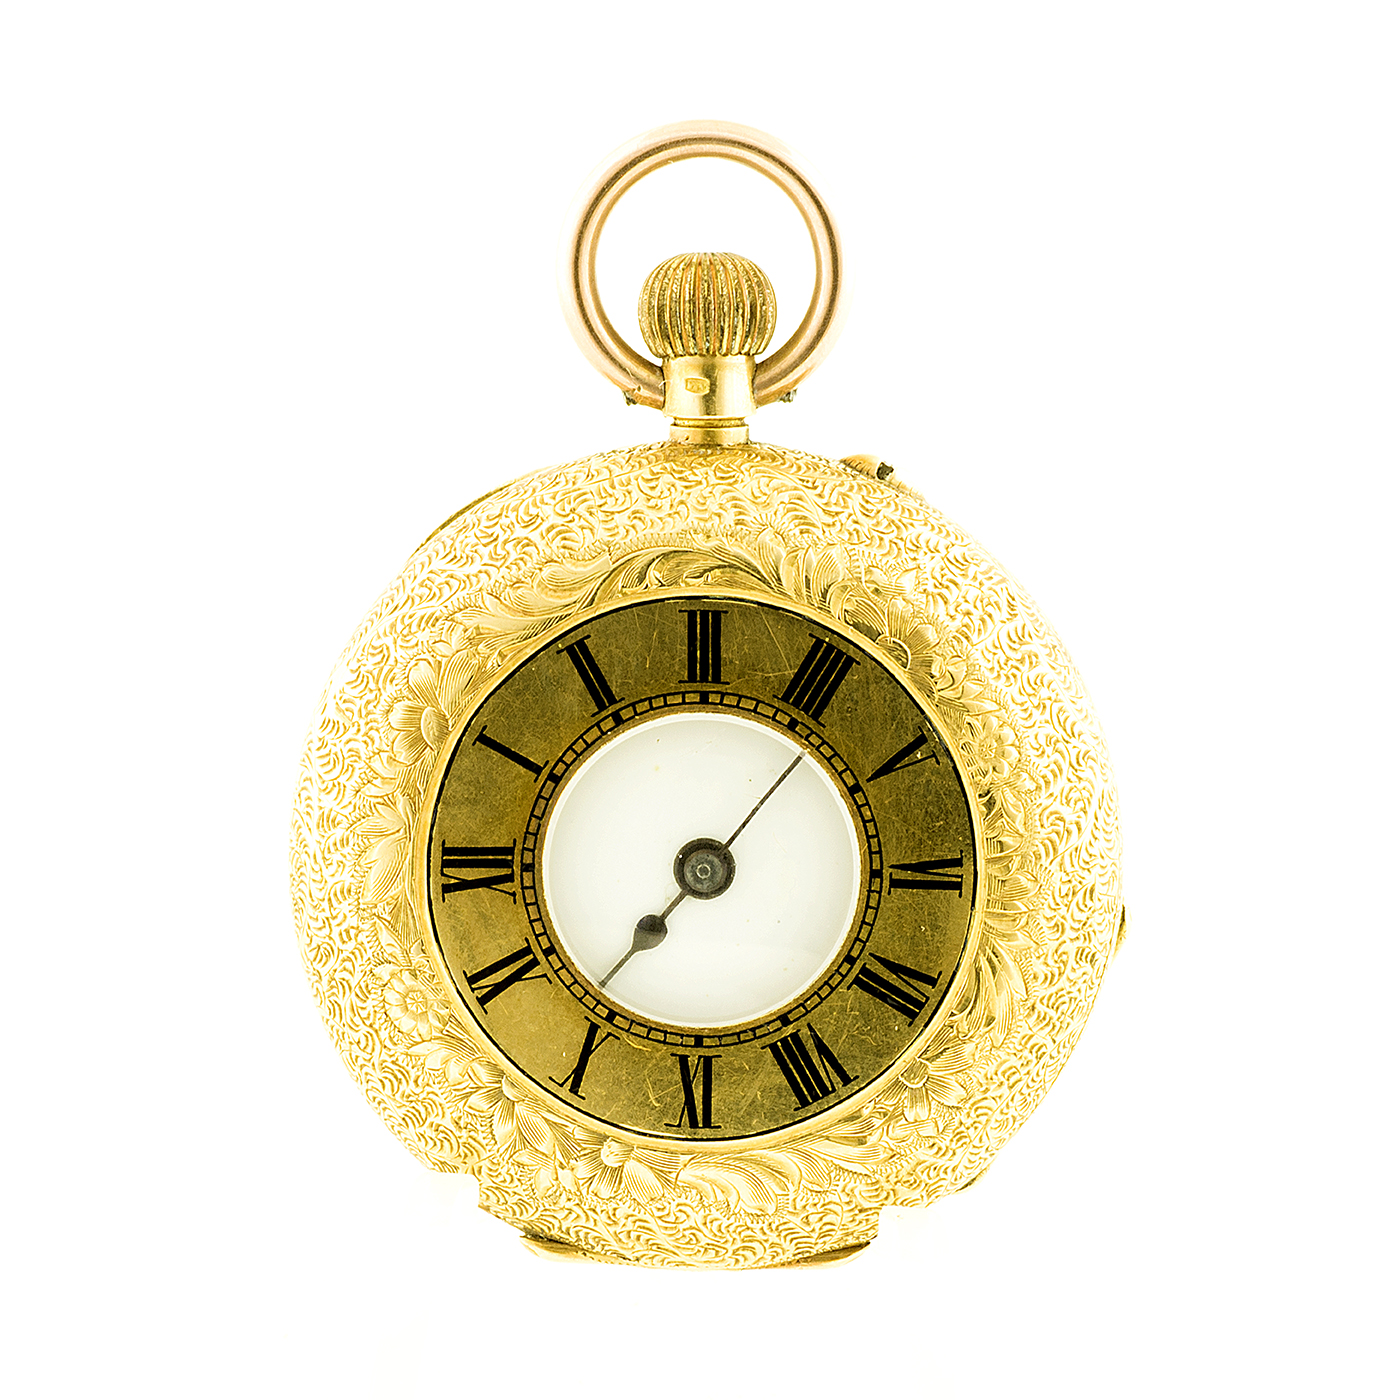 HW Pocket Watch-Hang, Half Saboneta und Remontoir. 18 Karat Gold. Schweiz, ca. 1900